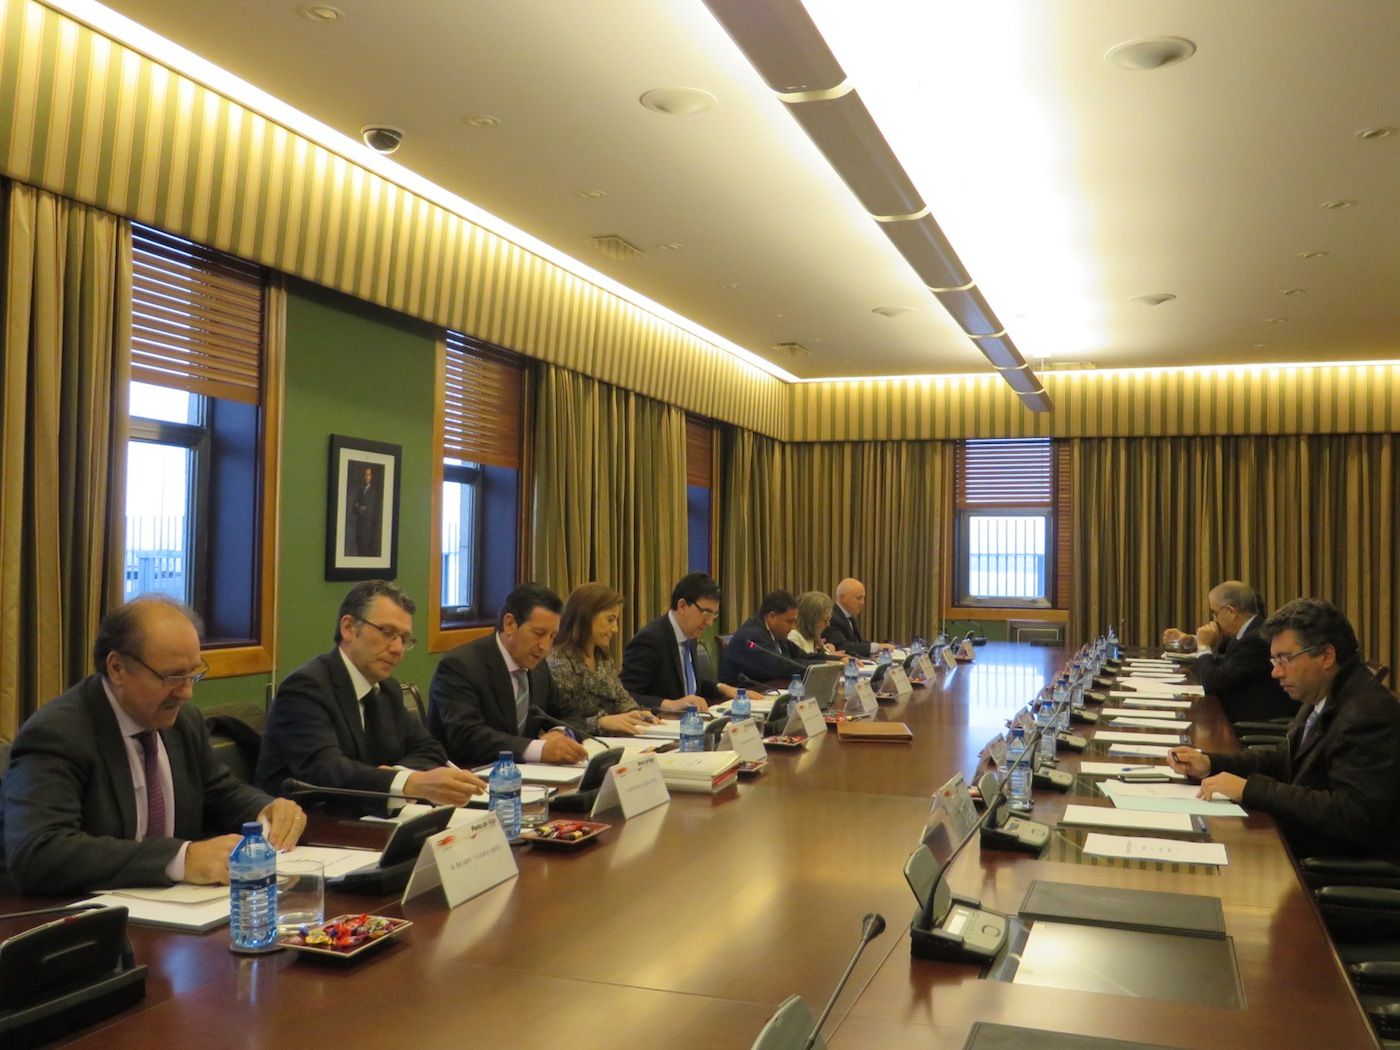 Consejo de administracion del puerto de Vigo, 30 de marzo 2015